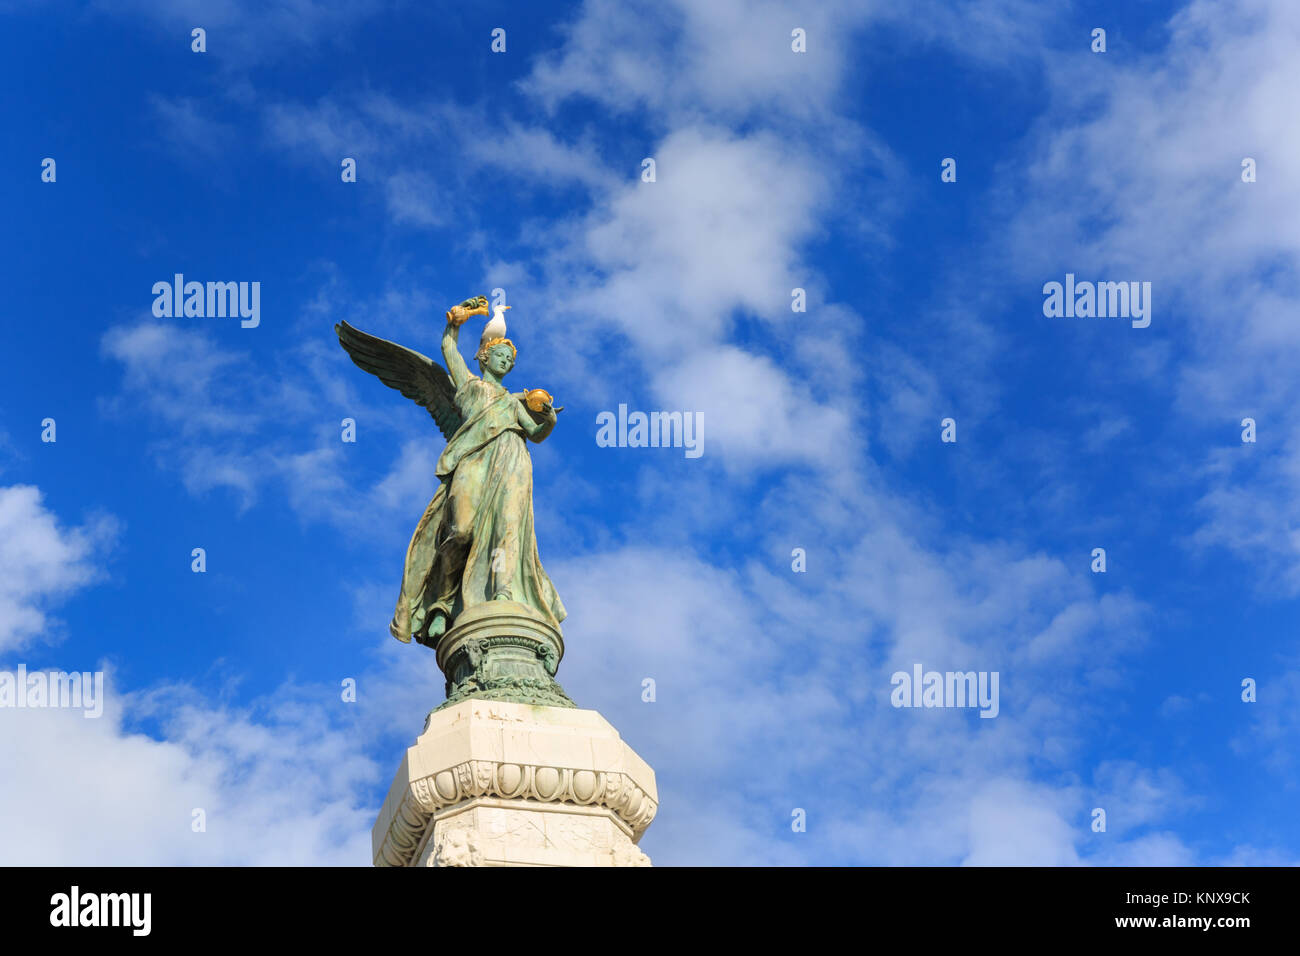 Monument du Centenaire de la réunion de Nice à la France, de la Statue de la ville de Nice, du Memorial Boulevard des Anglais, Nice, Côte d'Azur, France Banque D'Images